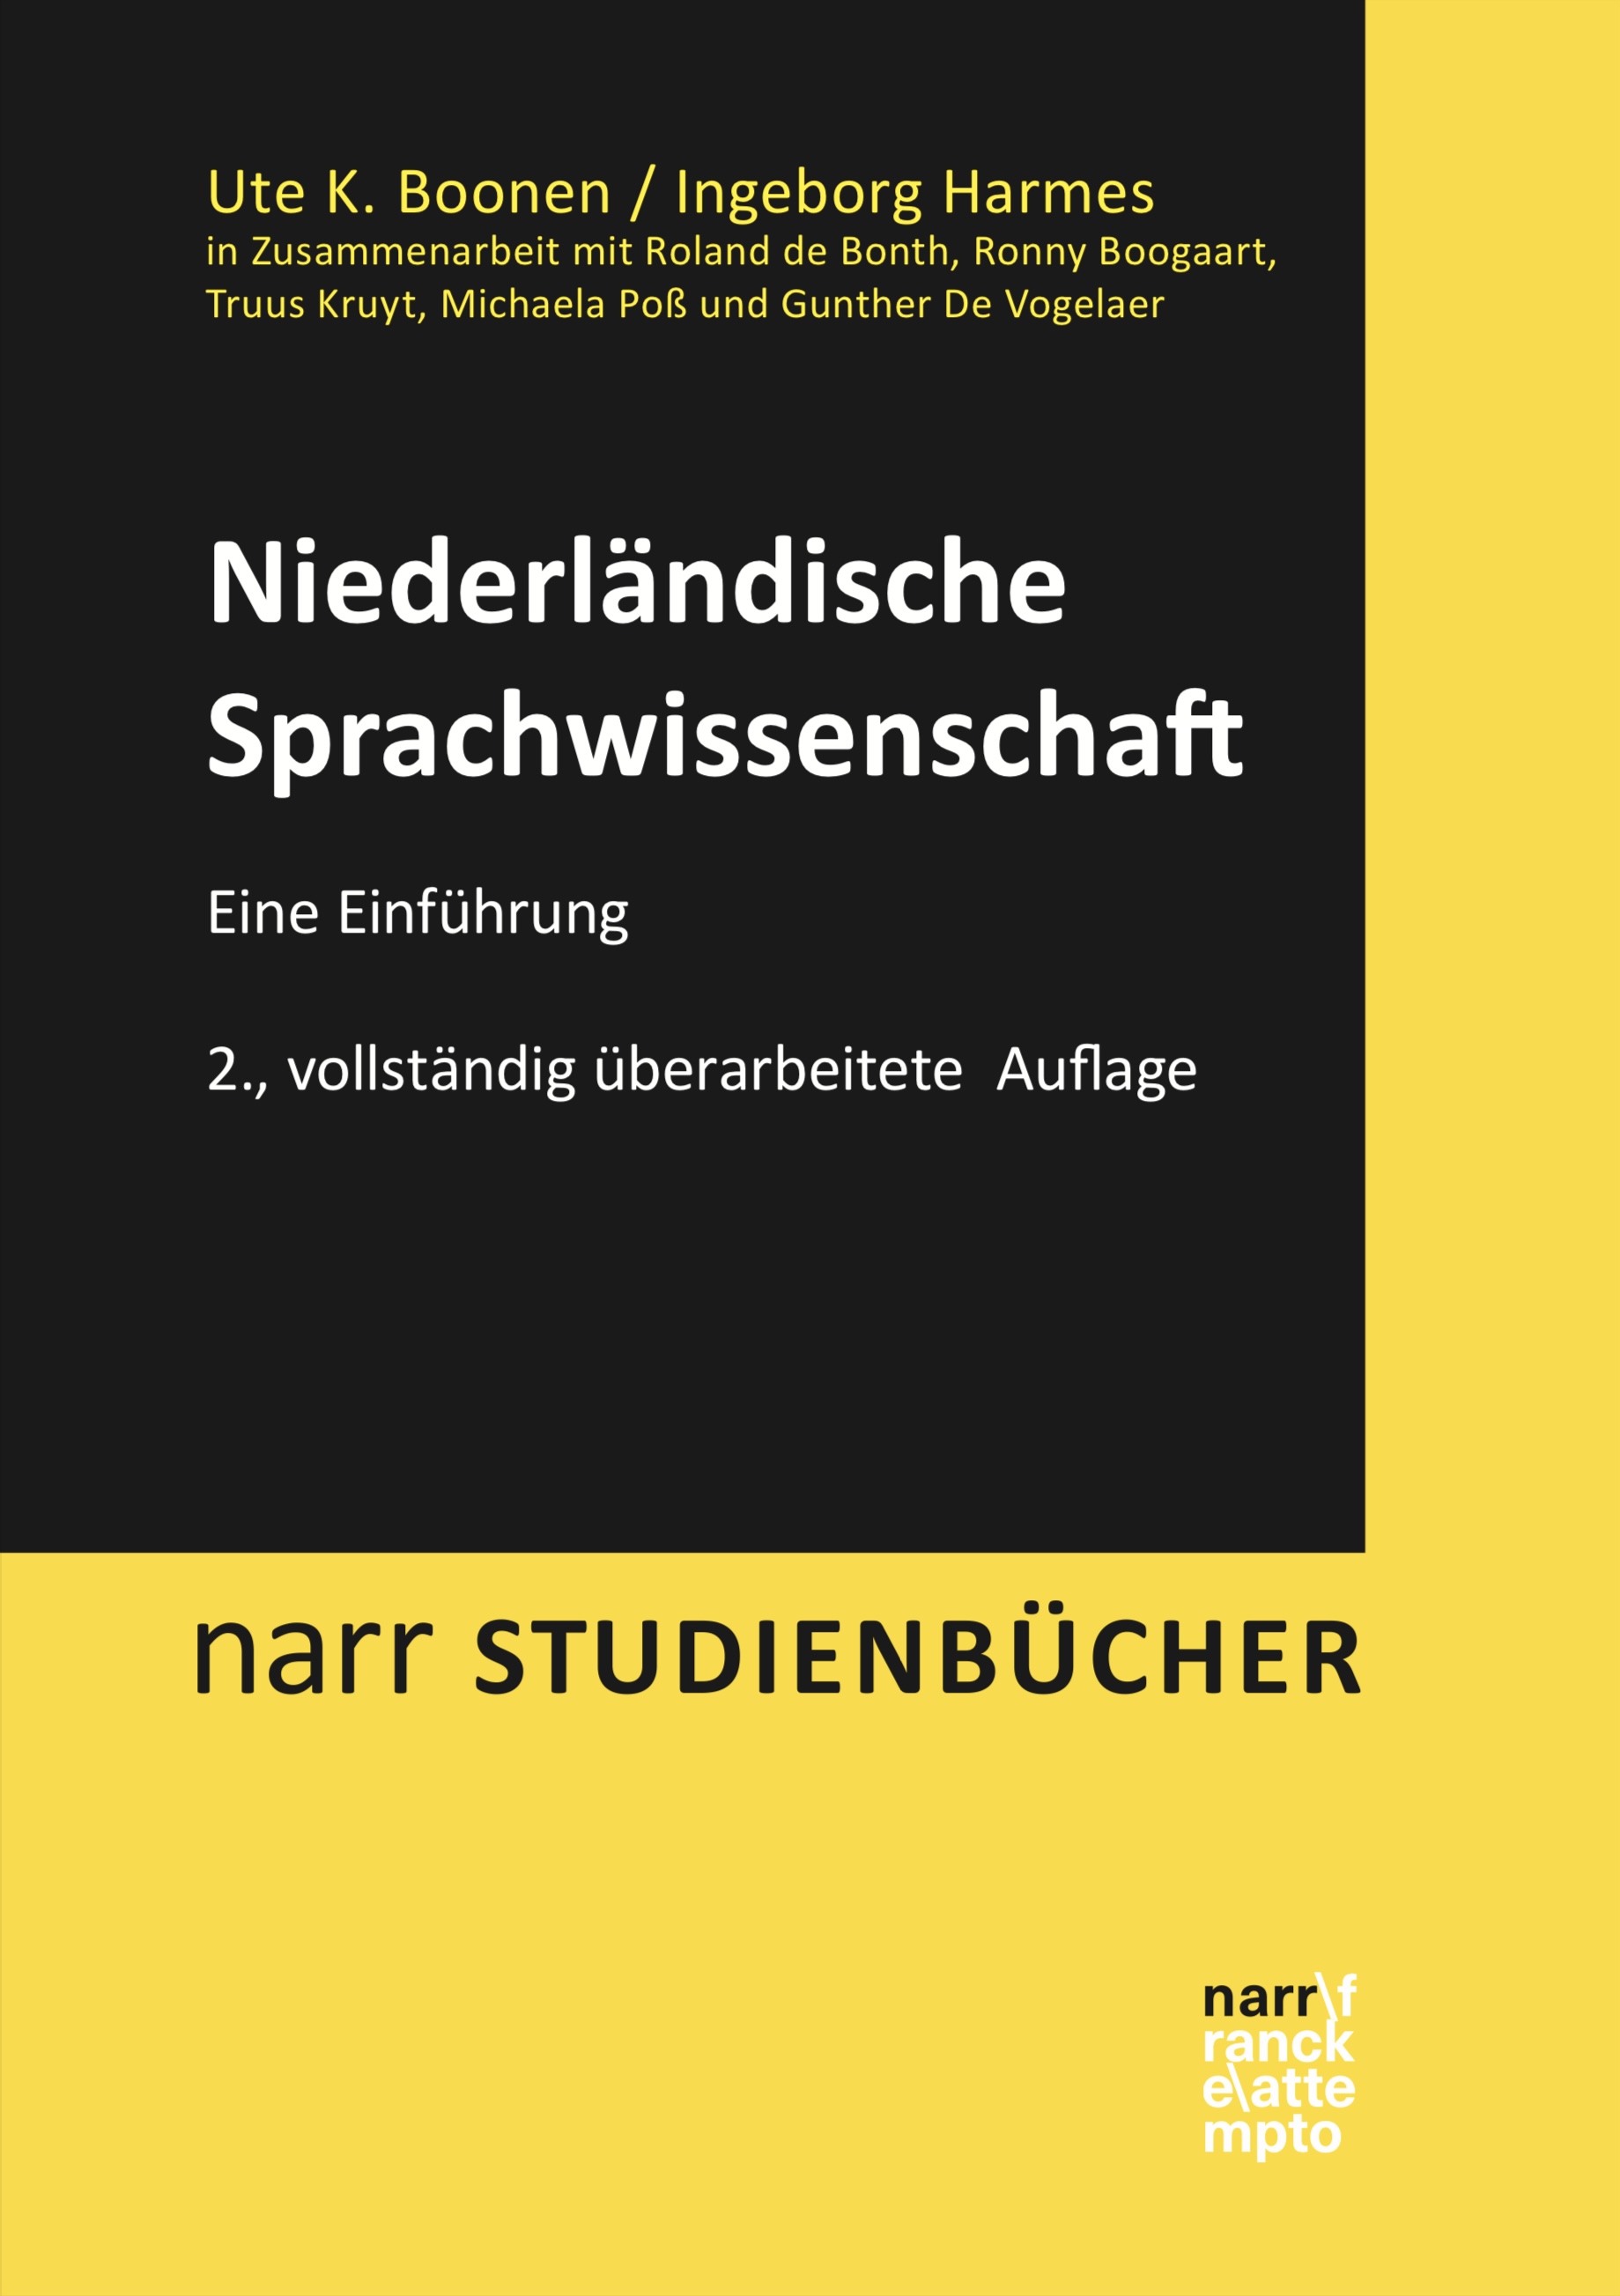 2.Auflage_NarrBuch